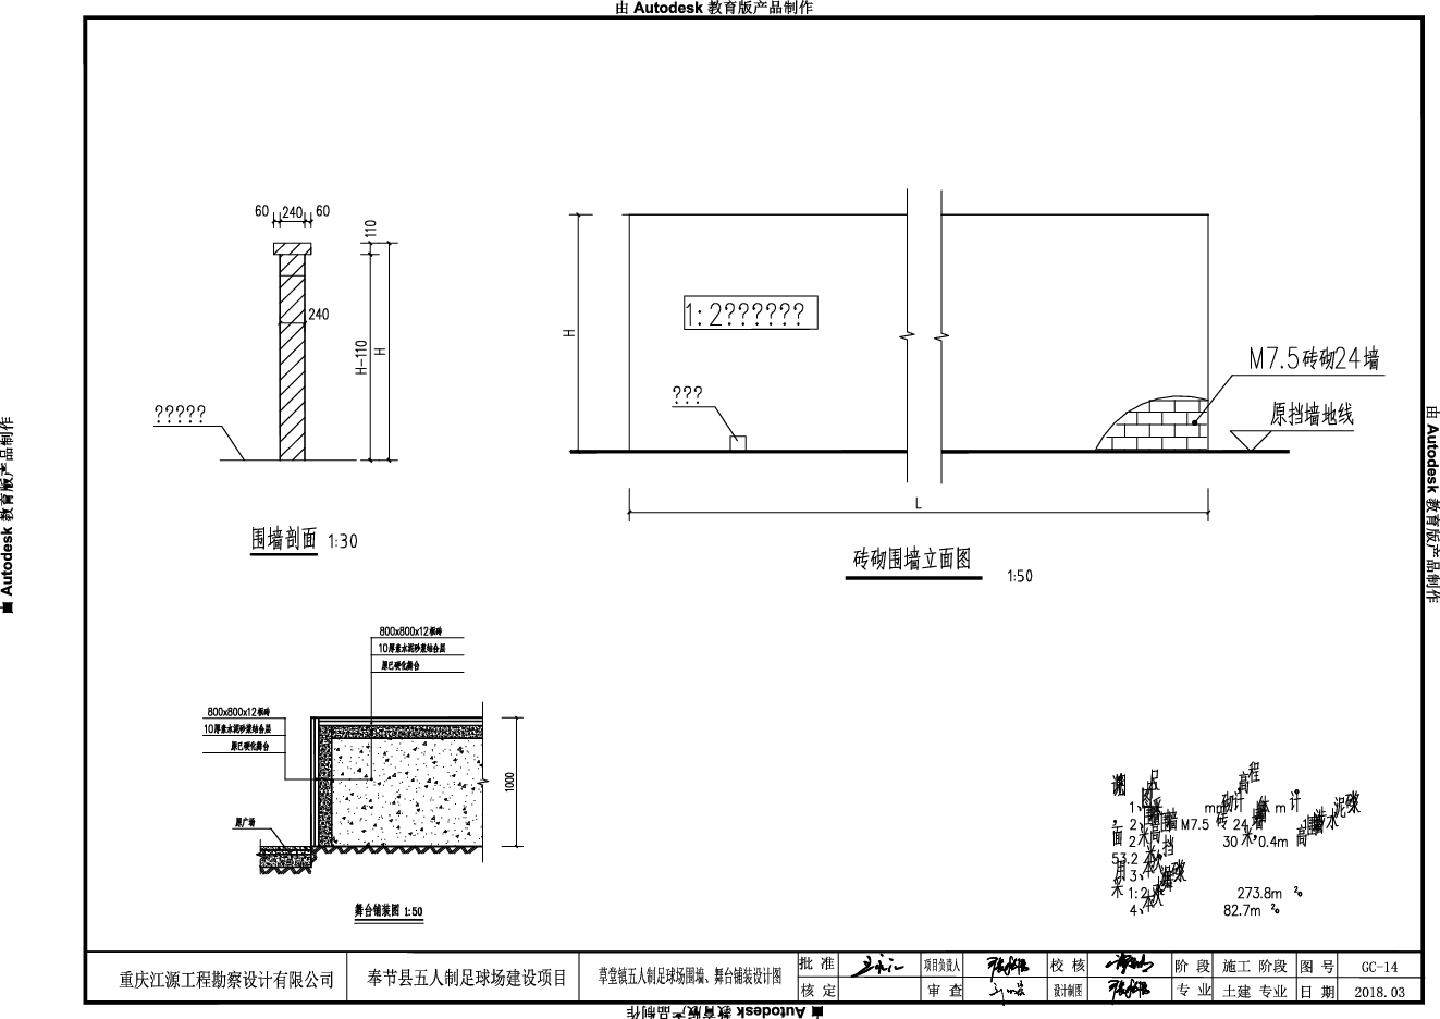 奉节县五人制足球场建设项目-单体CAD图.dwg